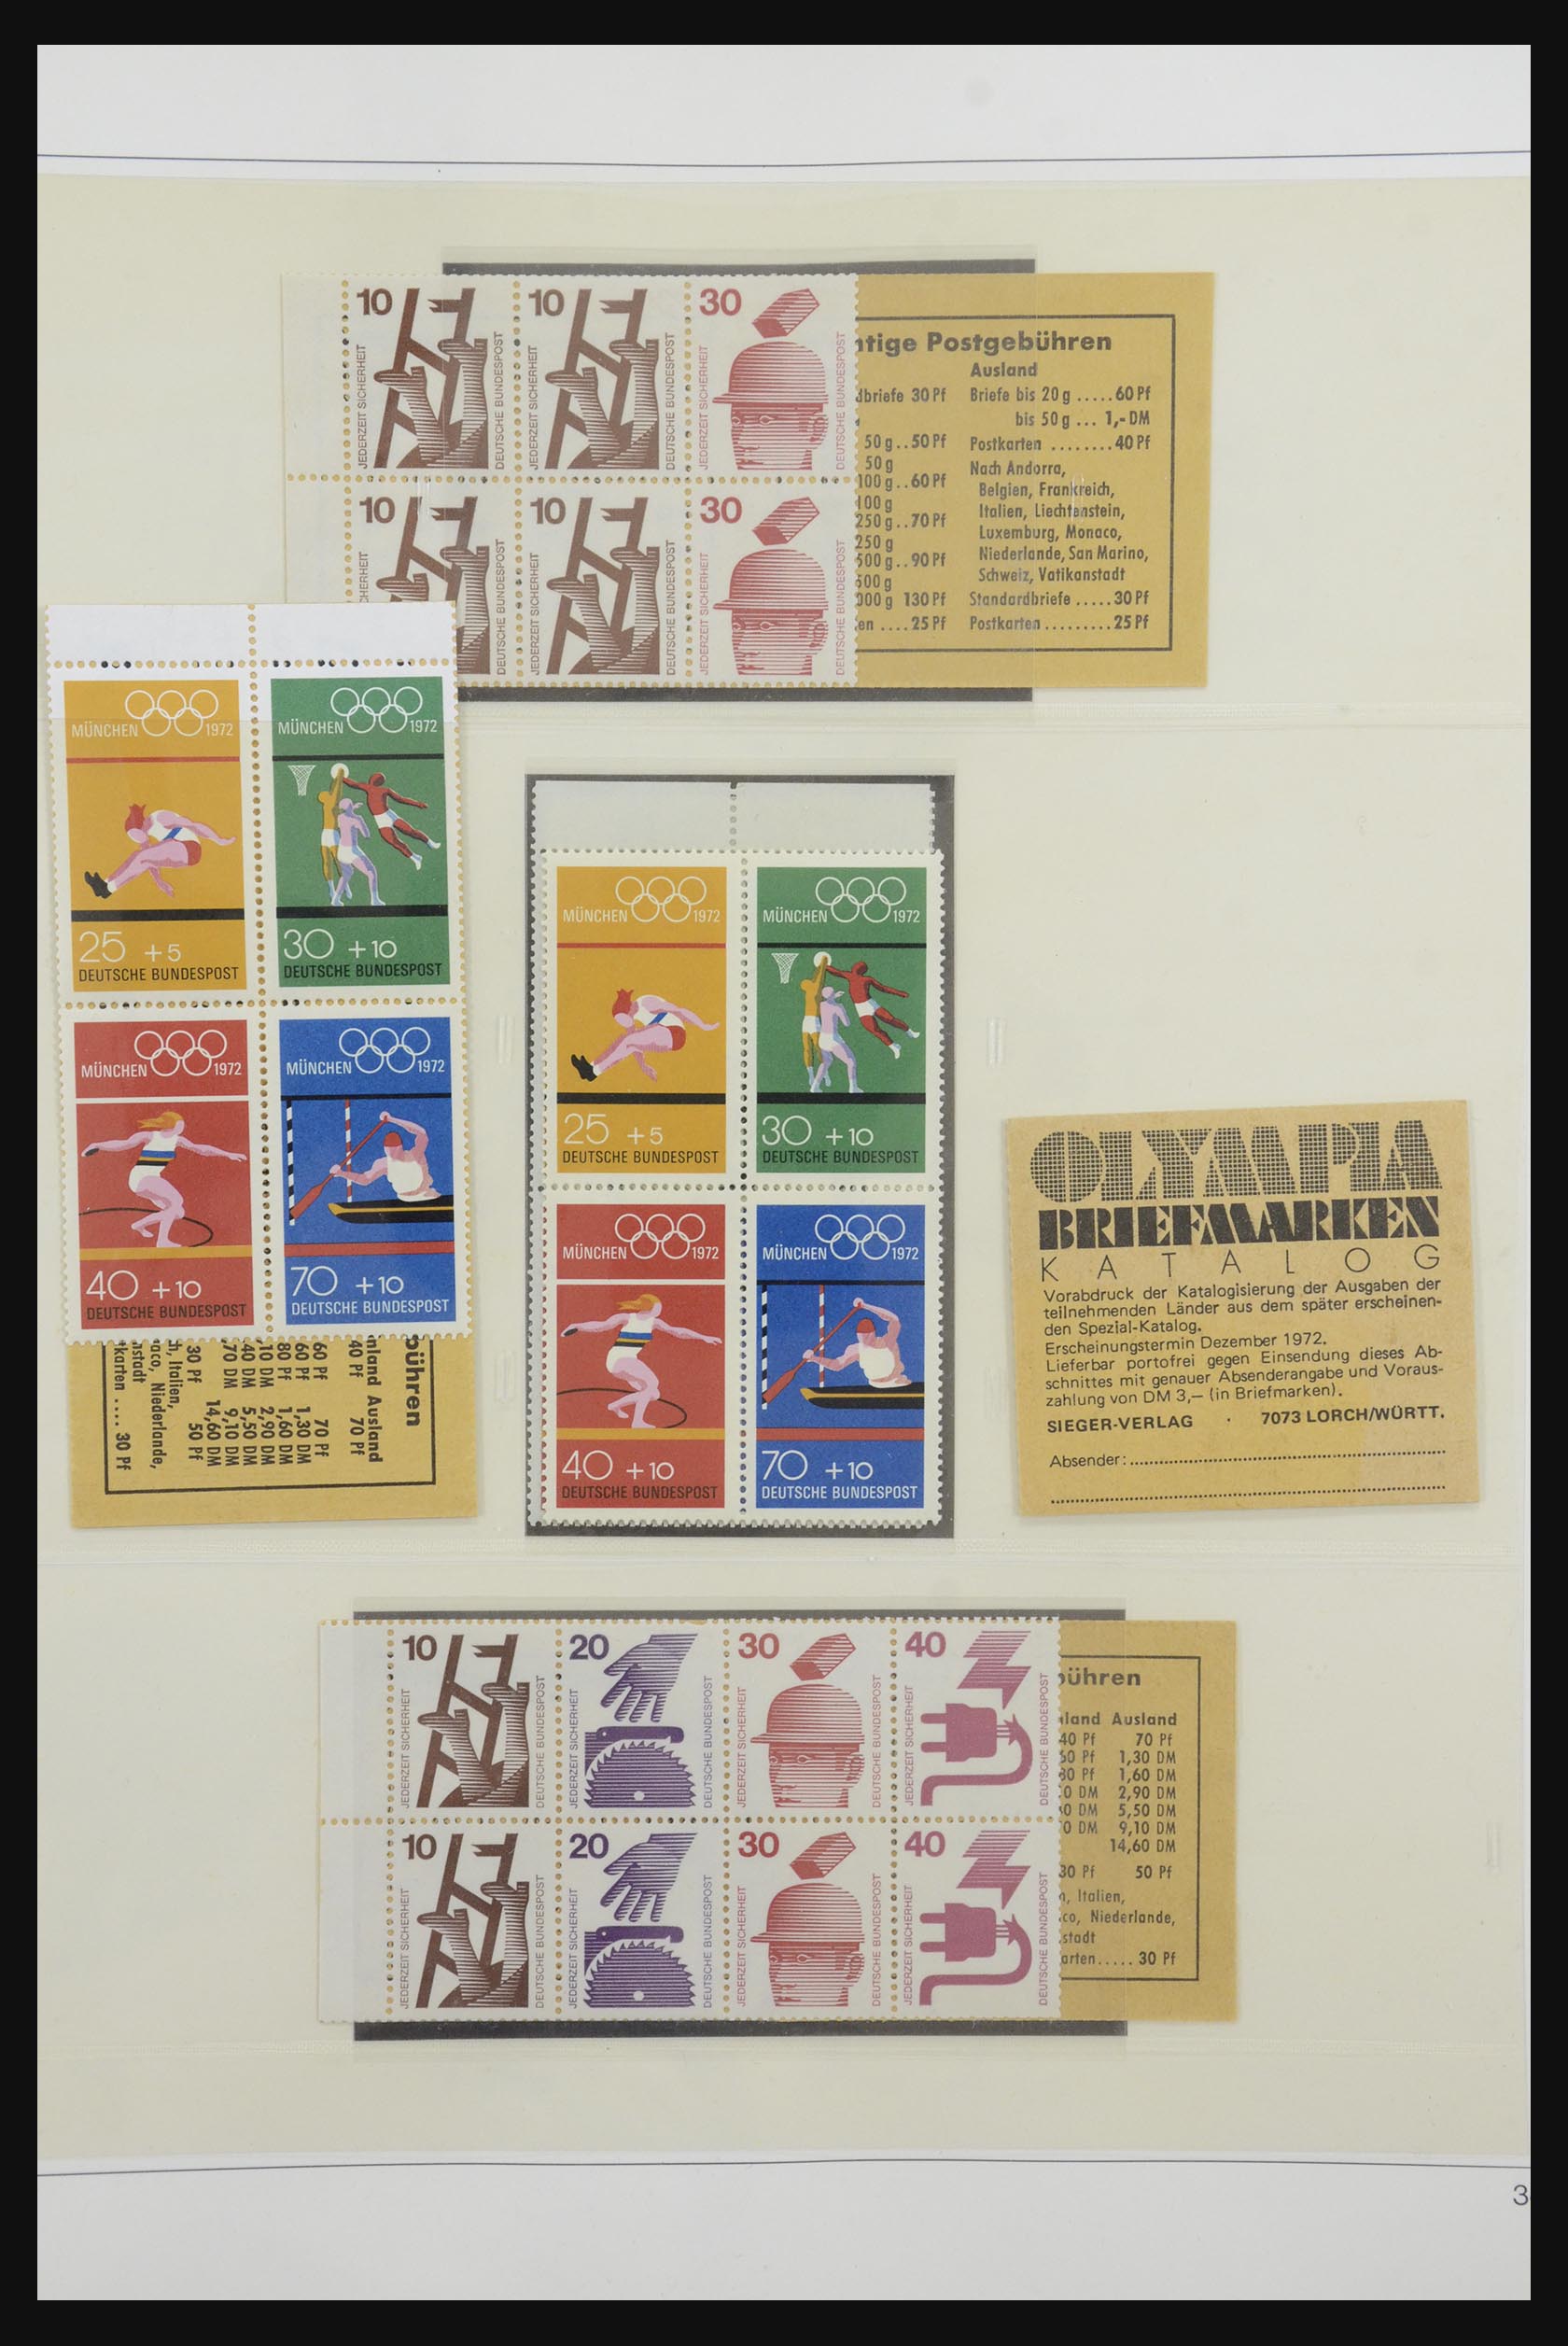 31842 047 - 31842 Bundespost combinations 1951-2003.